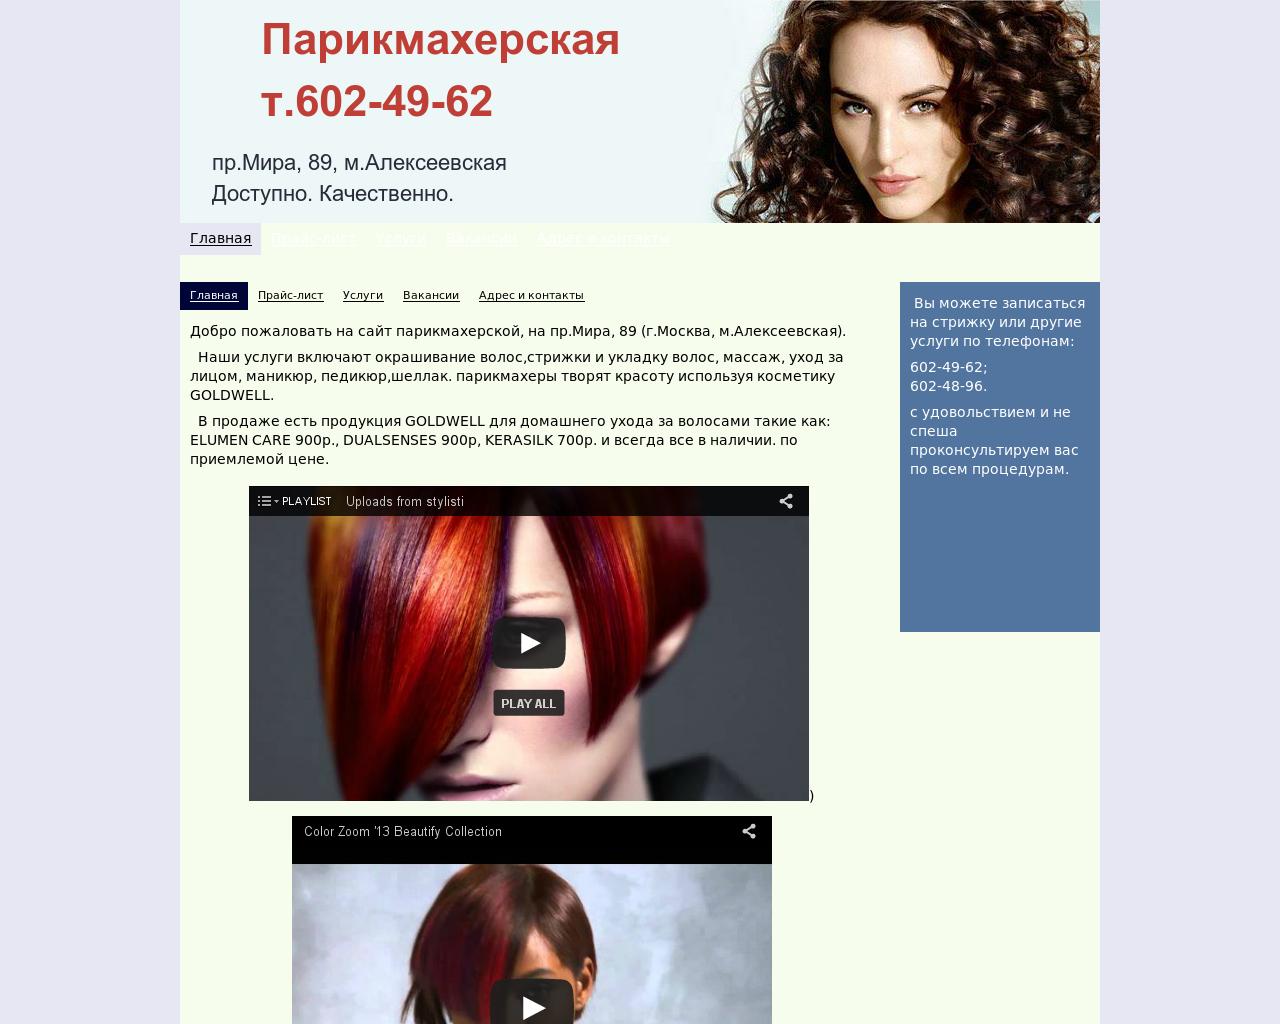 Изображение сайта 6024962.ru в разрешении 1280x1024